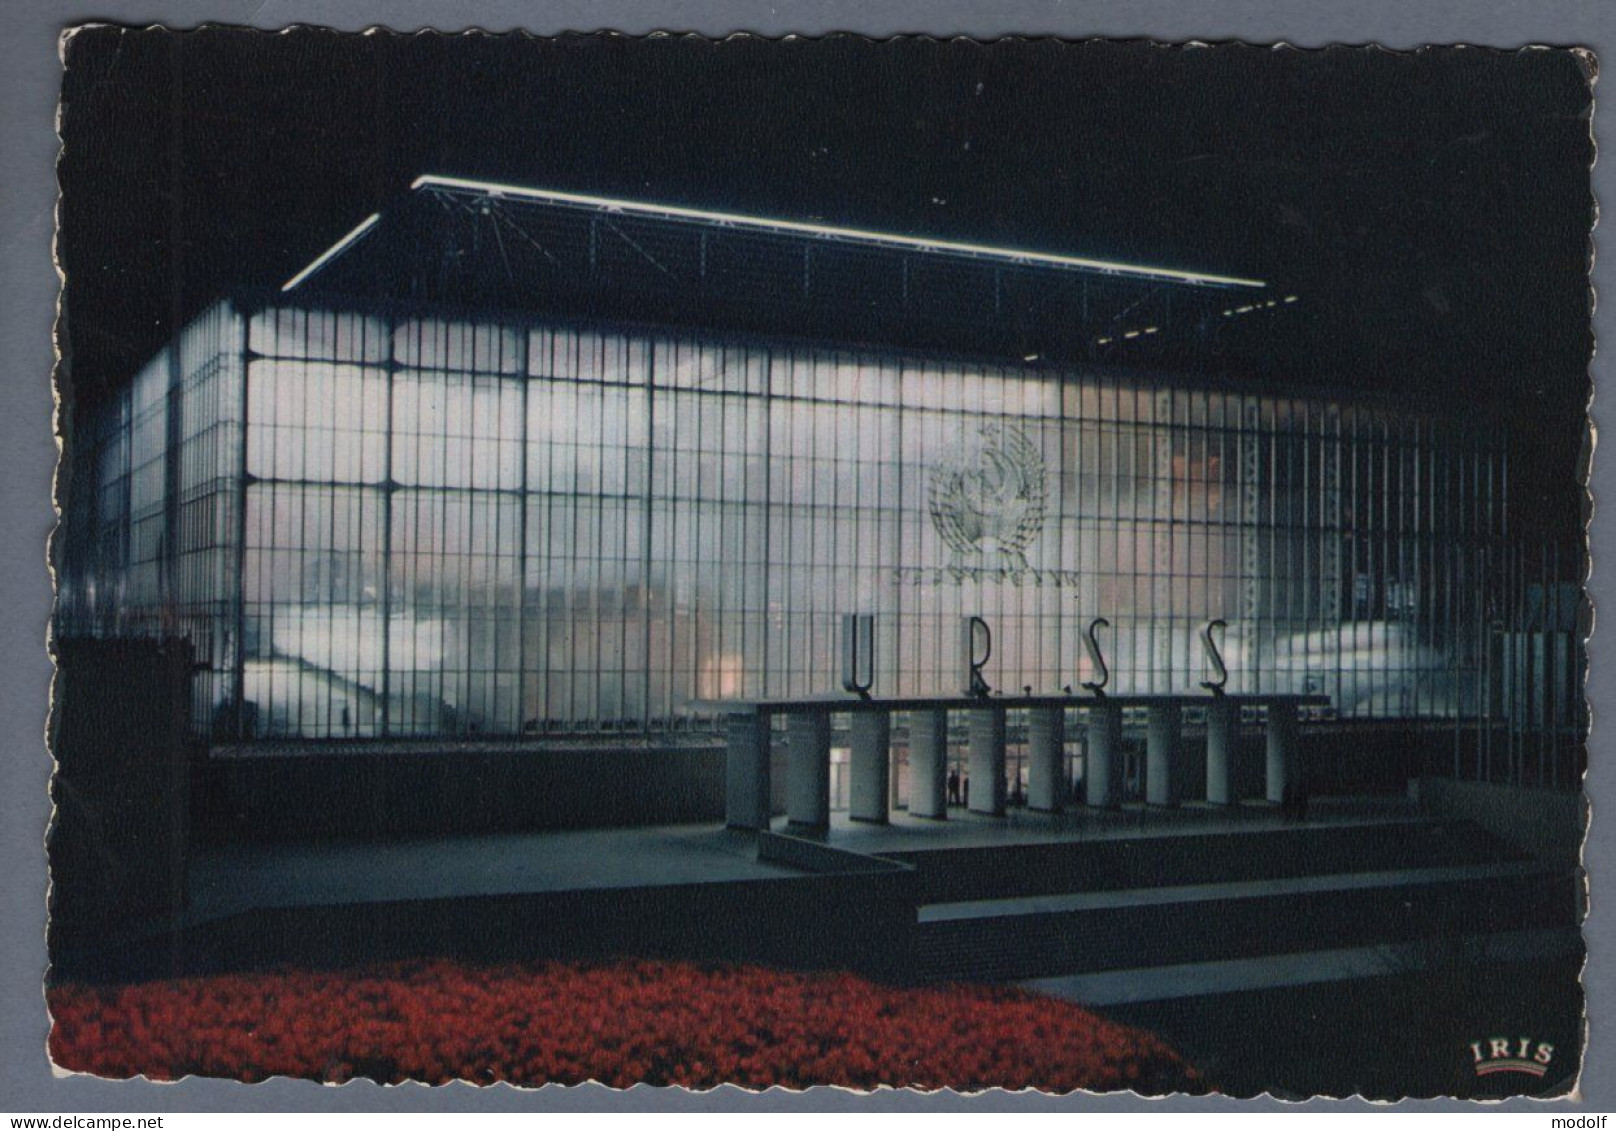 CPSM - Belgique - Exposition Universelle De Bruxelles 1958 - Pavillon De L'U.R.S.S. - Vue Nocturne - Non Circulée - Exposiciones Universales